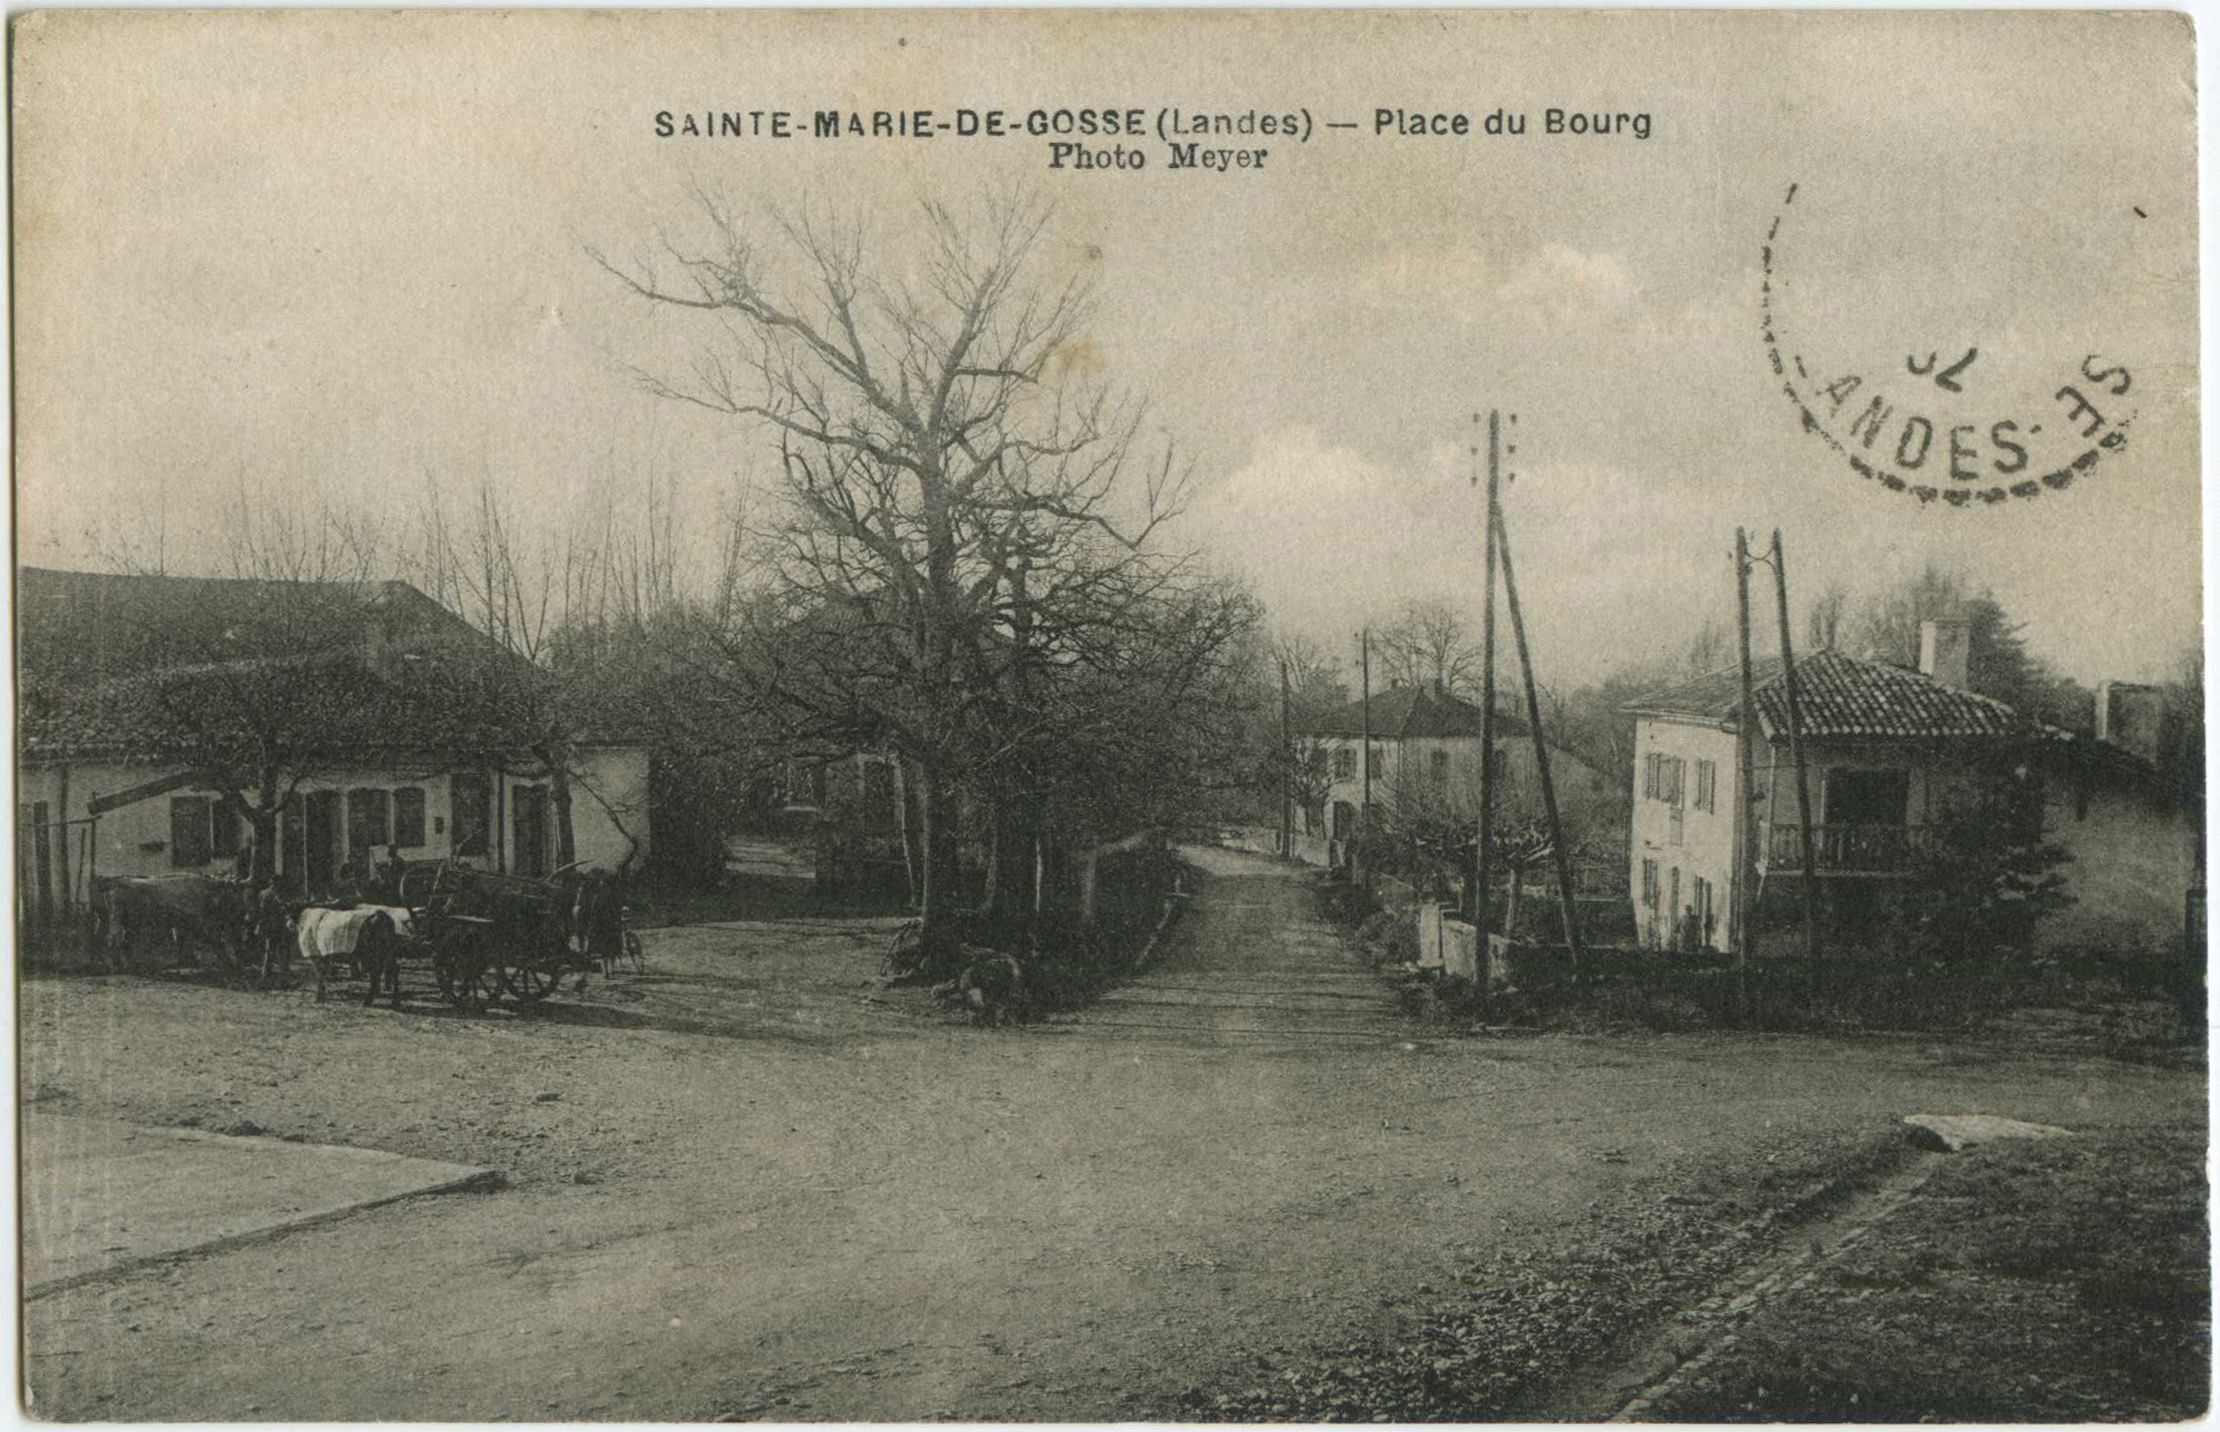 Sainte-Marie-de-Gosse - Place du Bourg